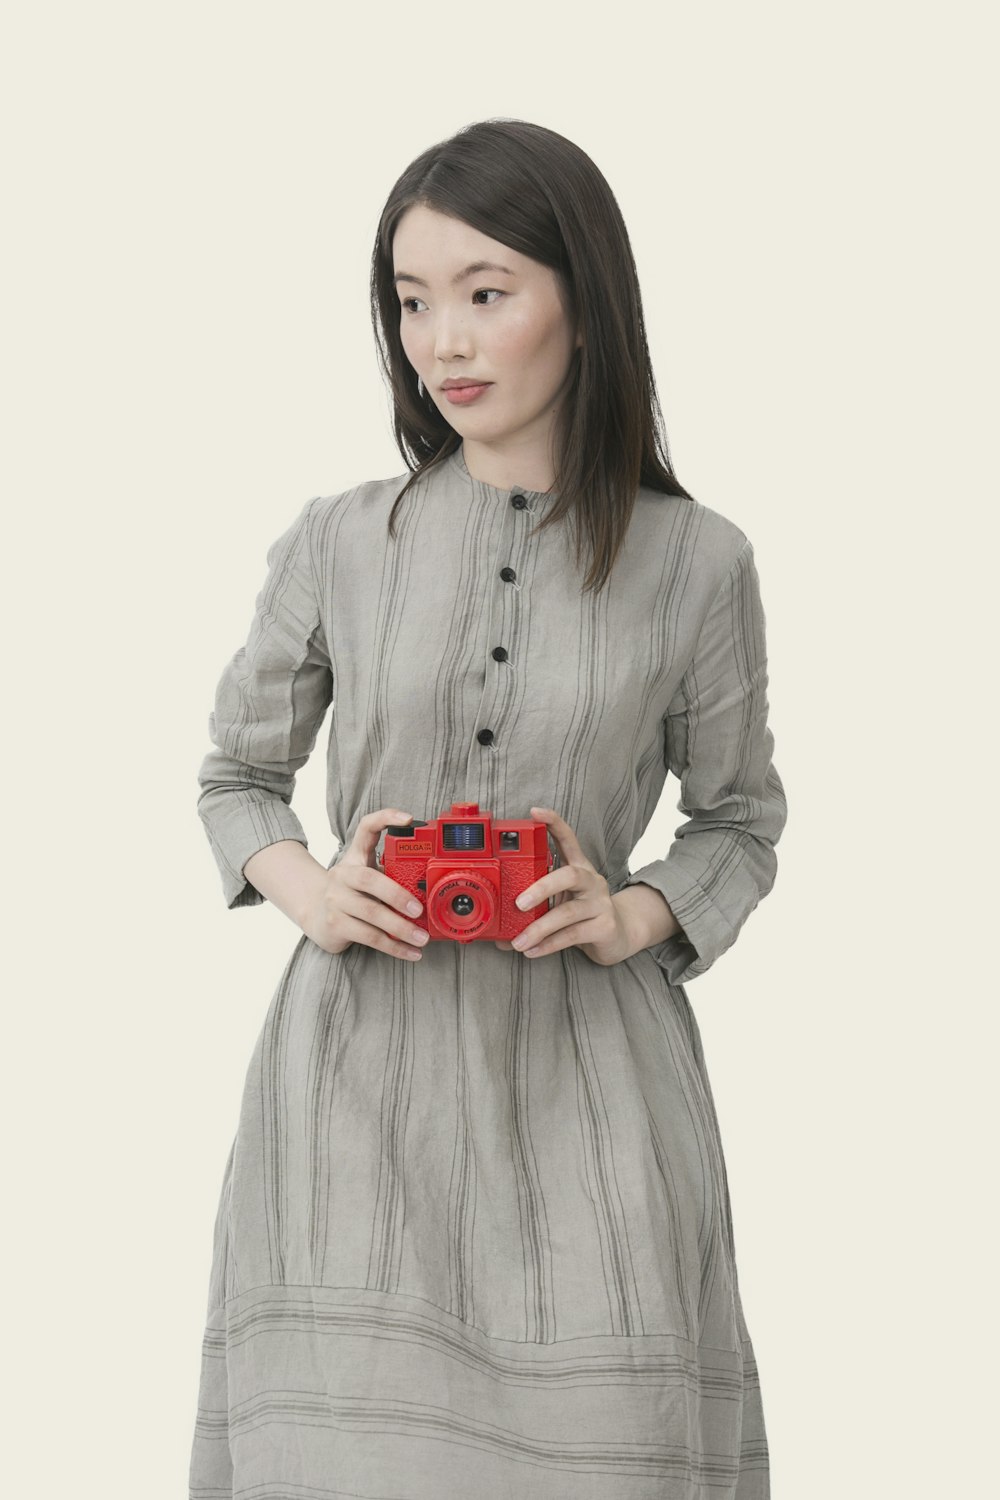 Femme portant une robe à manches longues boutonnée à rayures grises tenant un appareil photo rouge